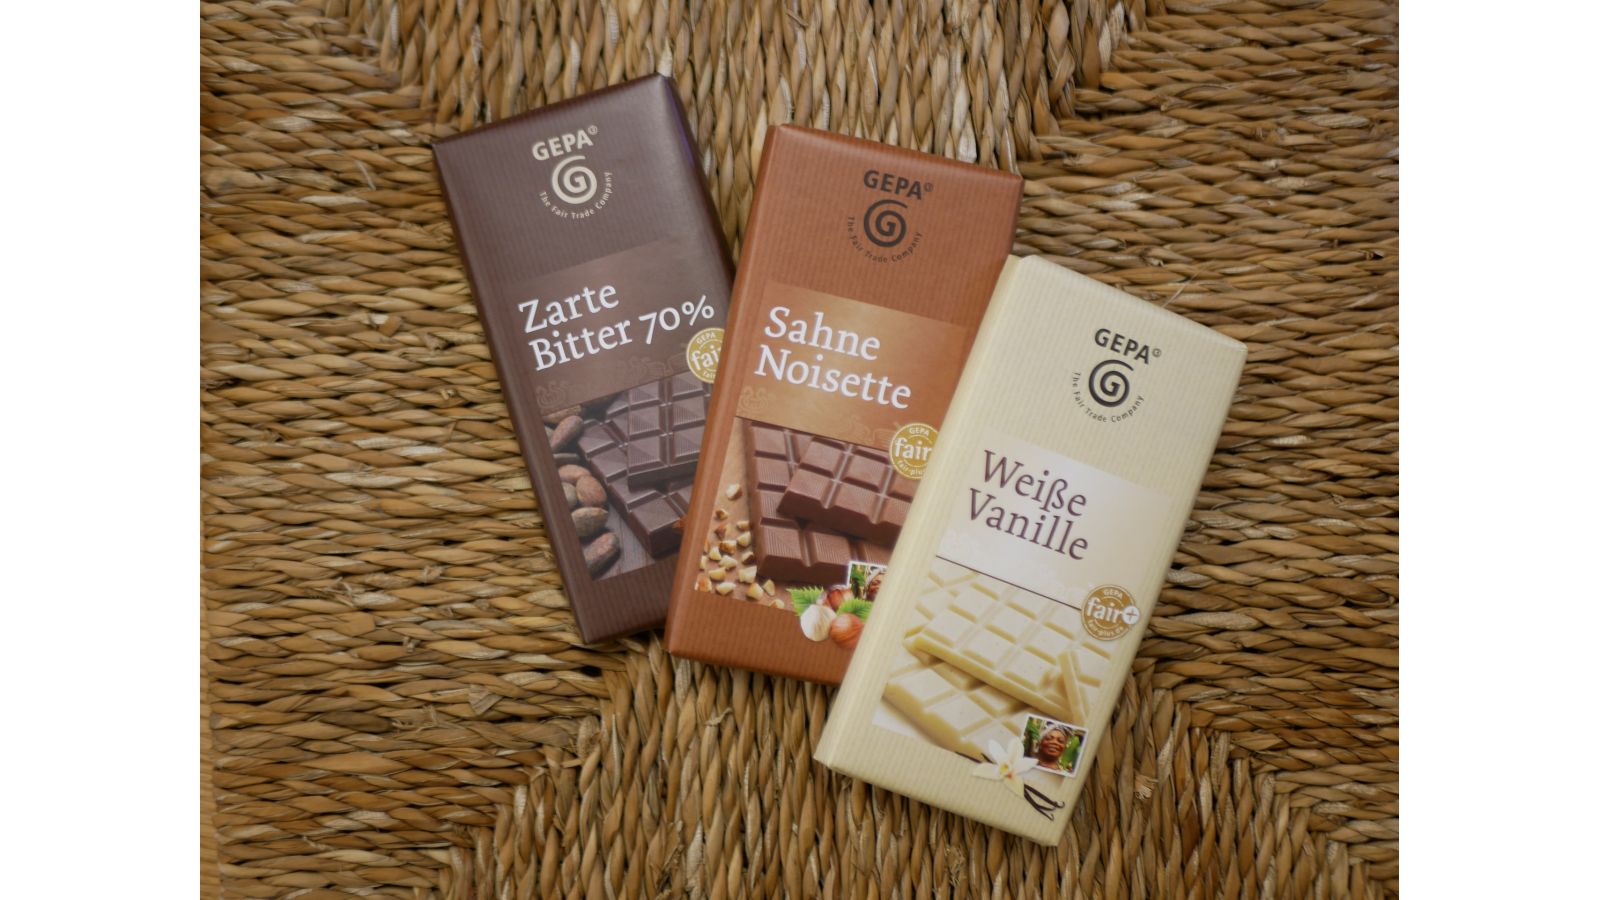 Schokolade Zarte Bitter 70%, Sahne Noisette, Weiße Vanille